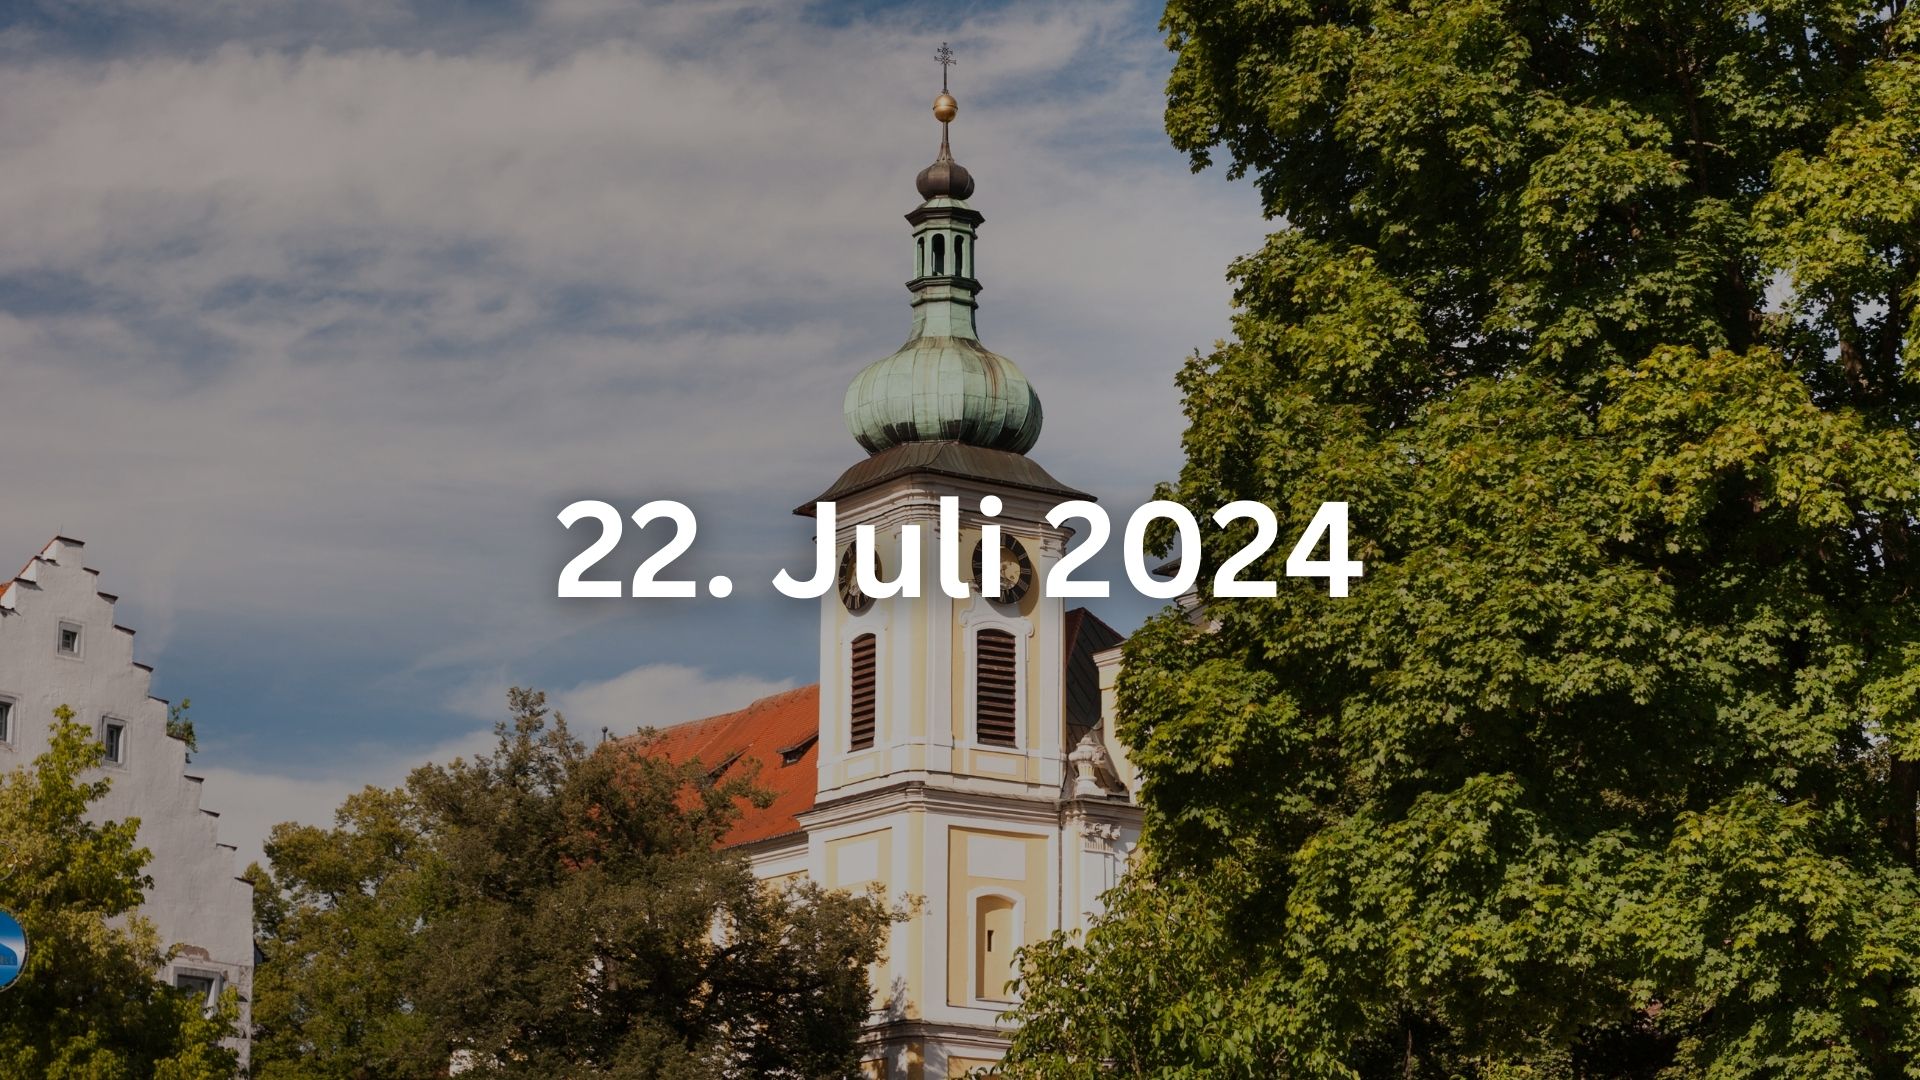 Bild von der Kirche in Donaueschingen mit dem Datum in weiß in der Mitte vom 22.Juli.2024